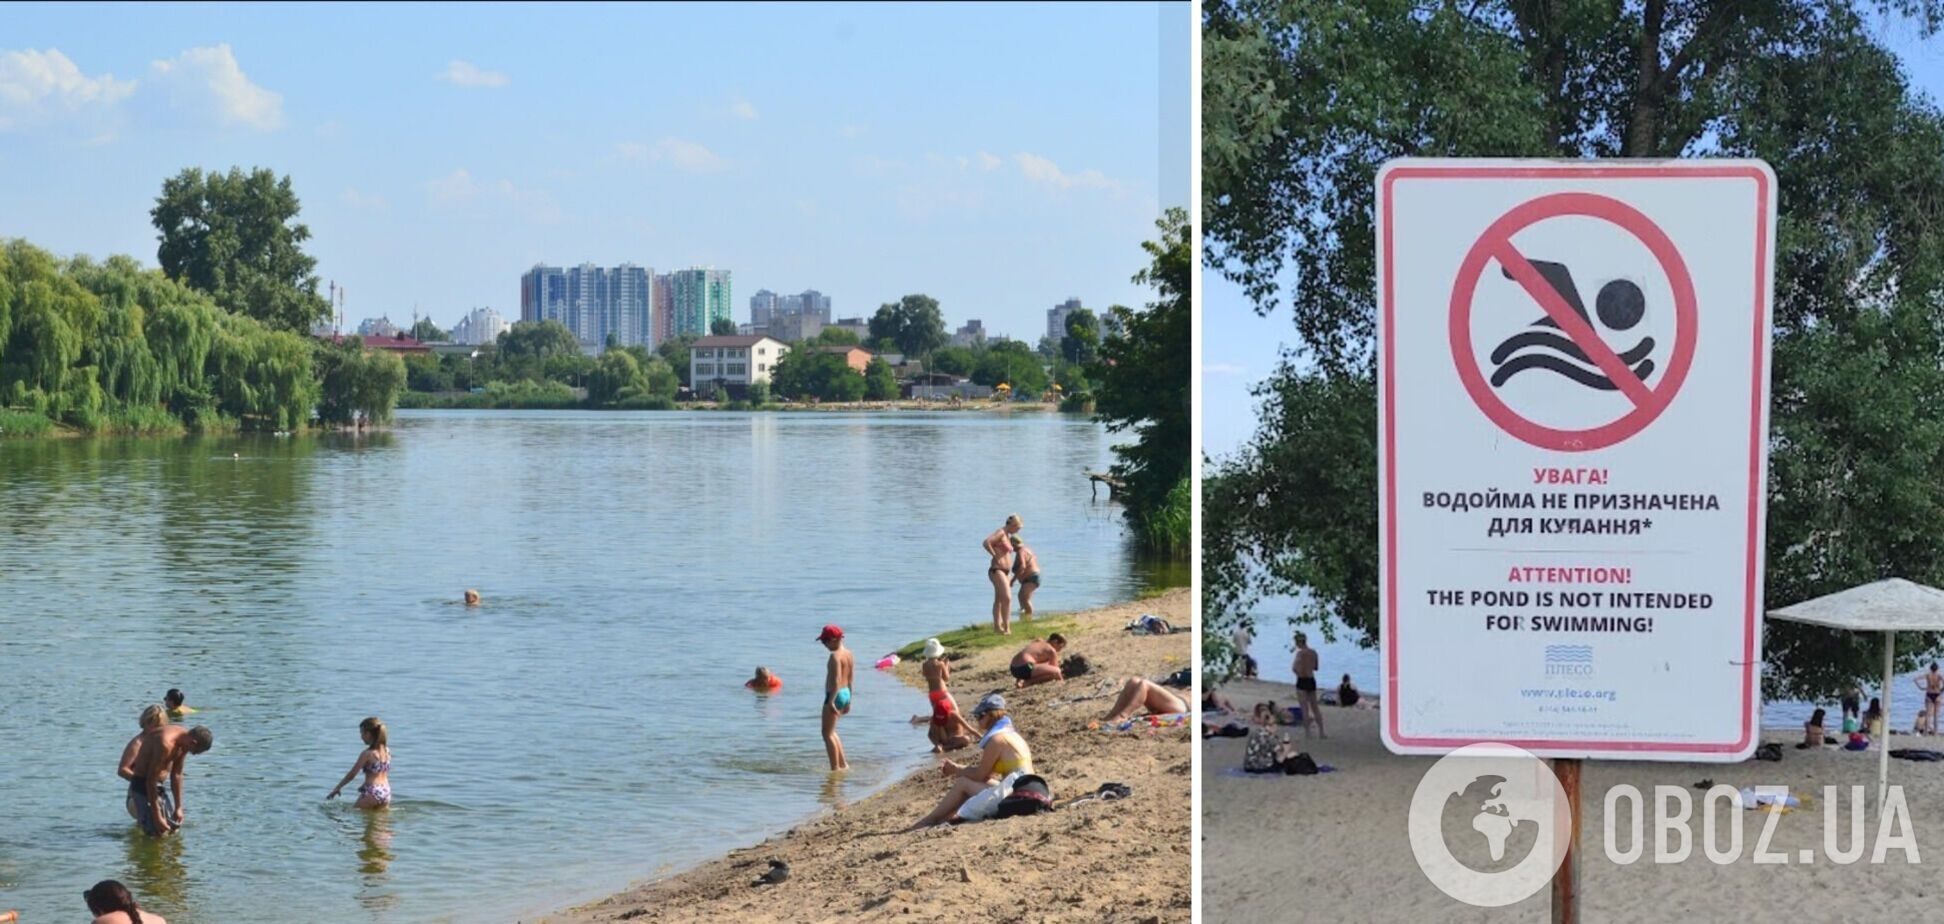 Стало відомо, на яких пляжах Києва краще не купатись